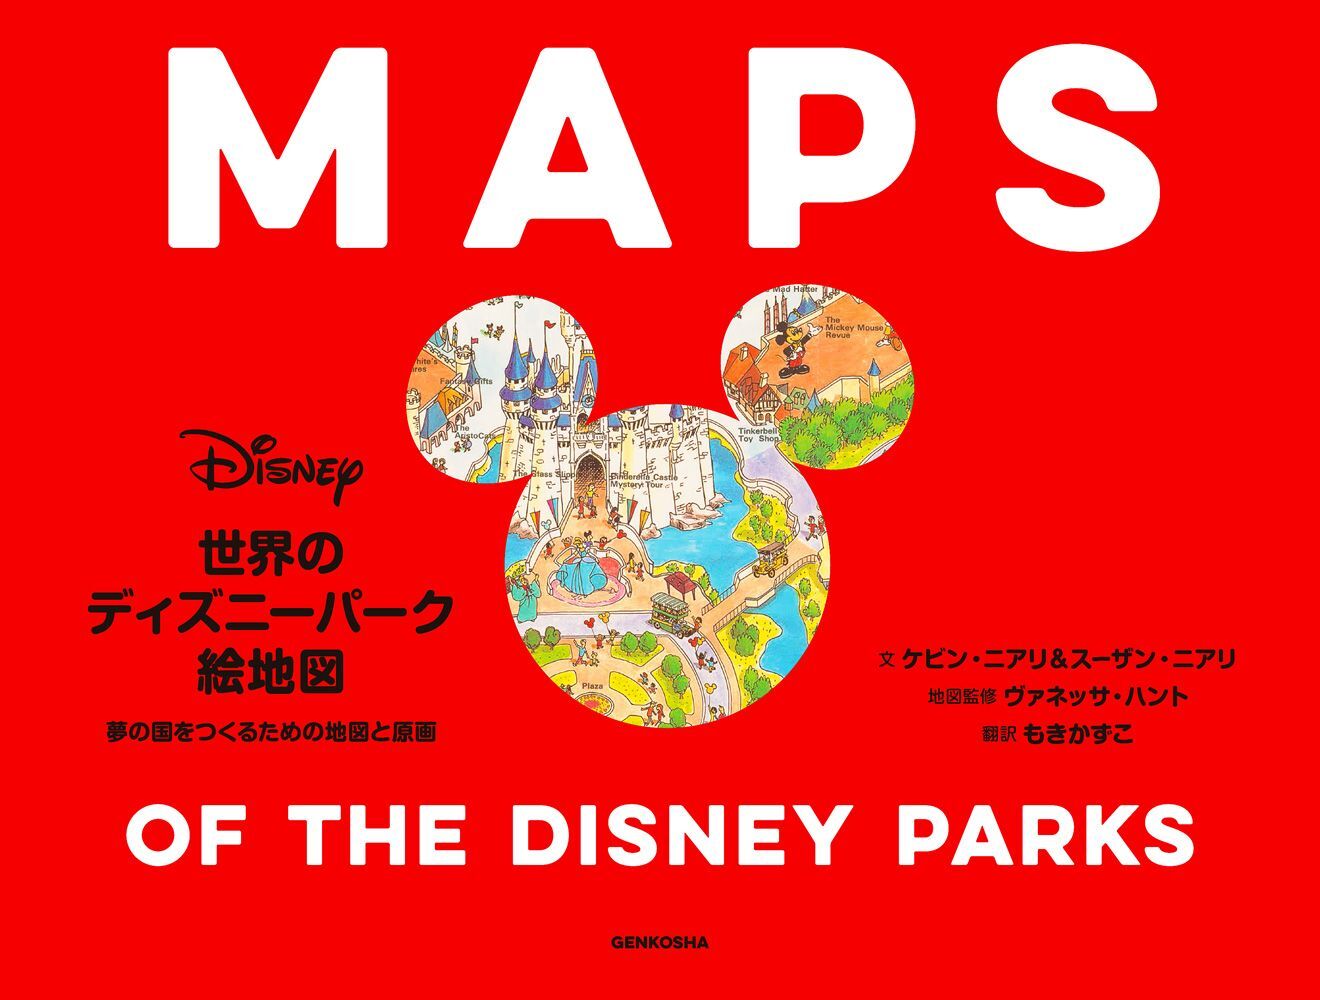 世界のディズニーパークのオープン当時 改築後の地図やラフスケッチなどを収録した資料集 世界のディズニー パーク絵地図 を5 26に発売 株式会社玄光社のプレスリリース